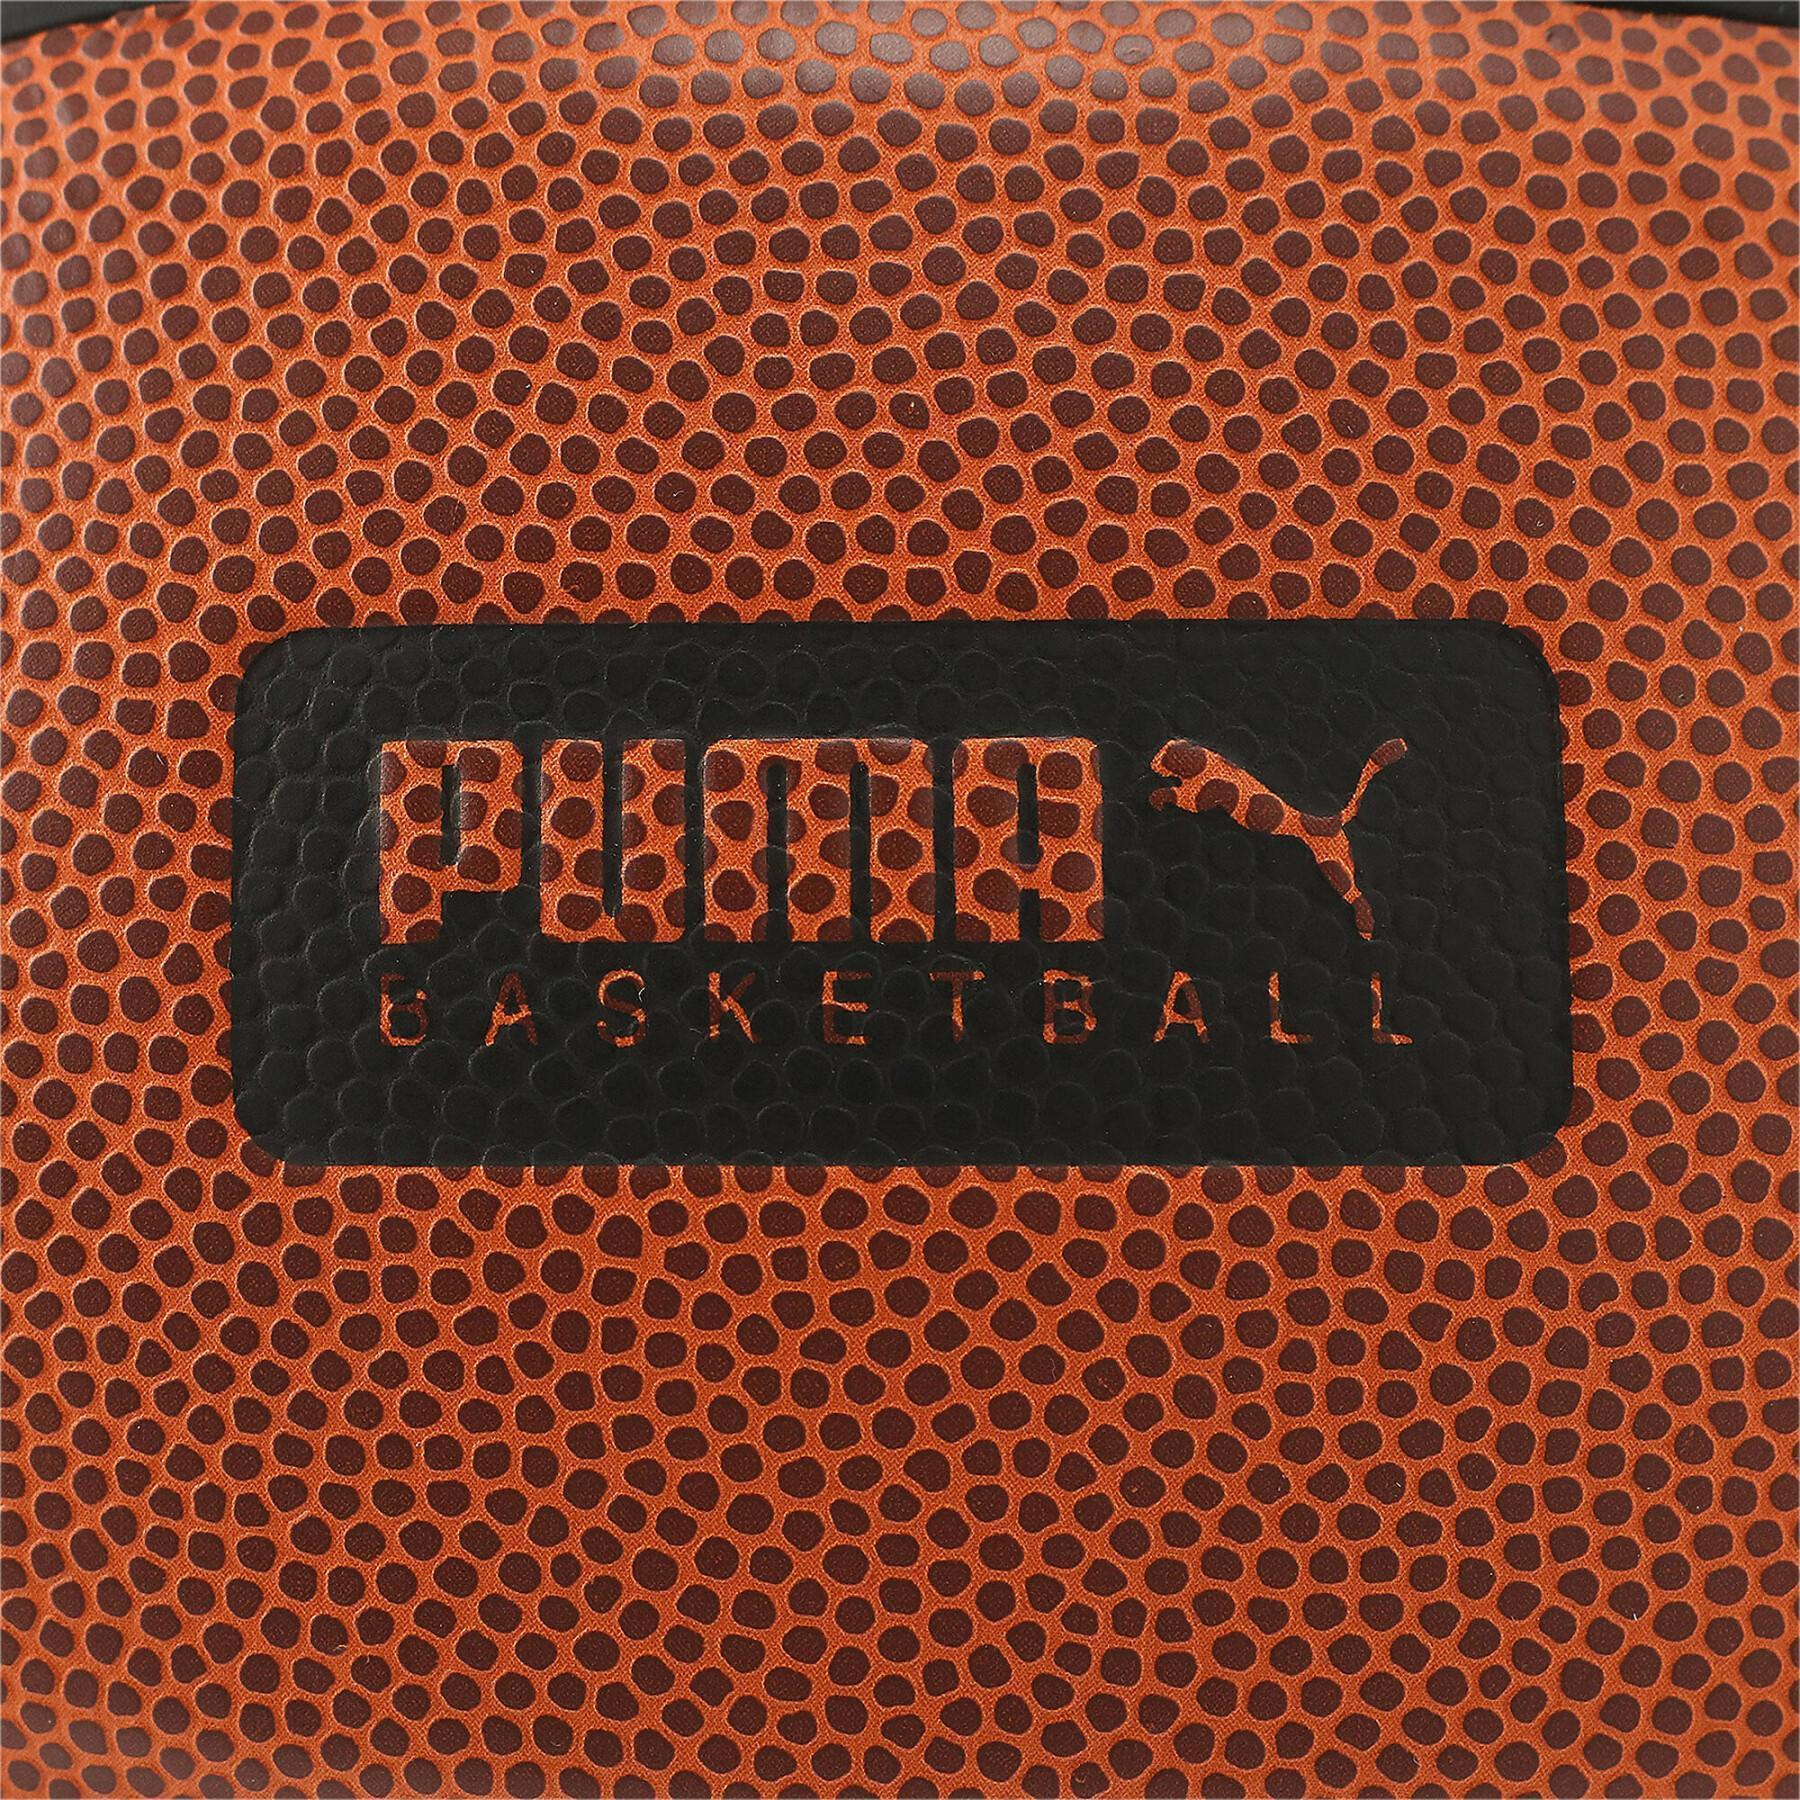 Pallone Puma Basketball Top